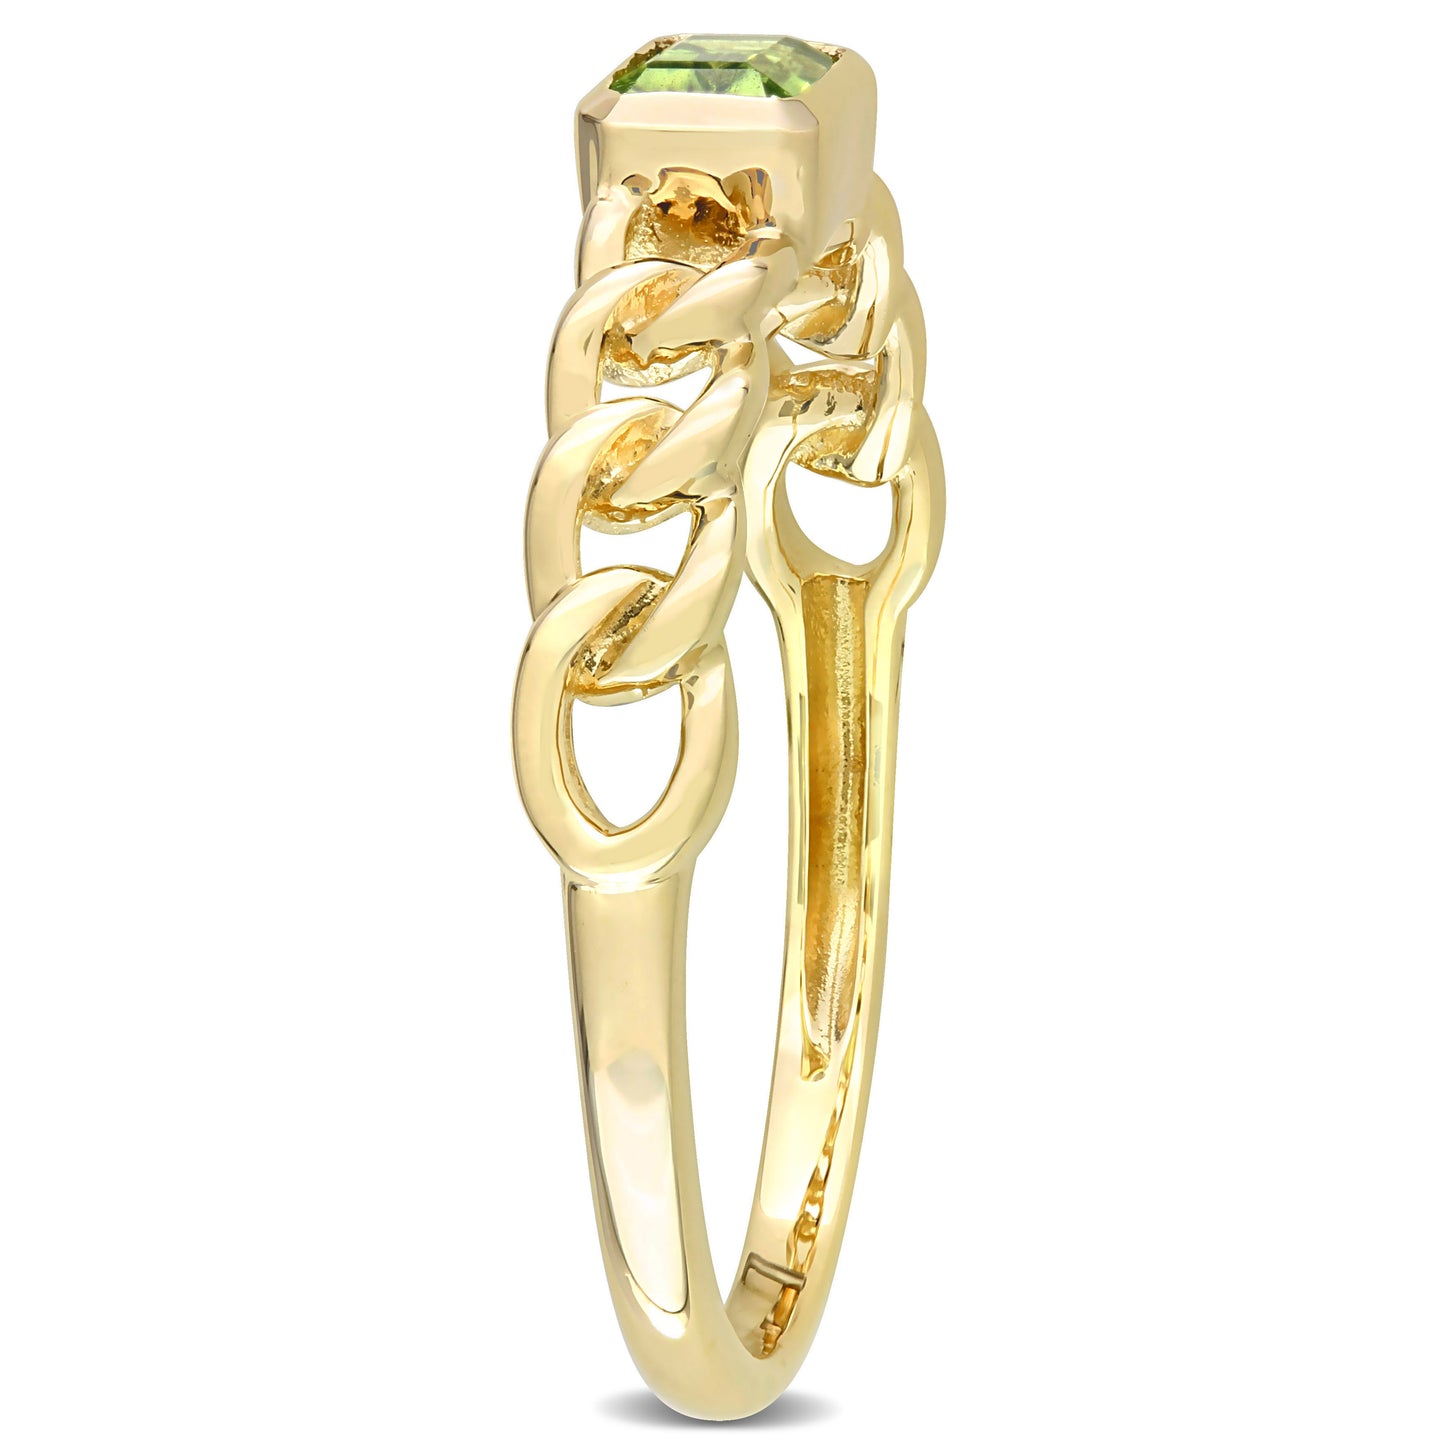 Emerald Peridot Ring in 10k Yellow Gold